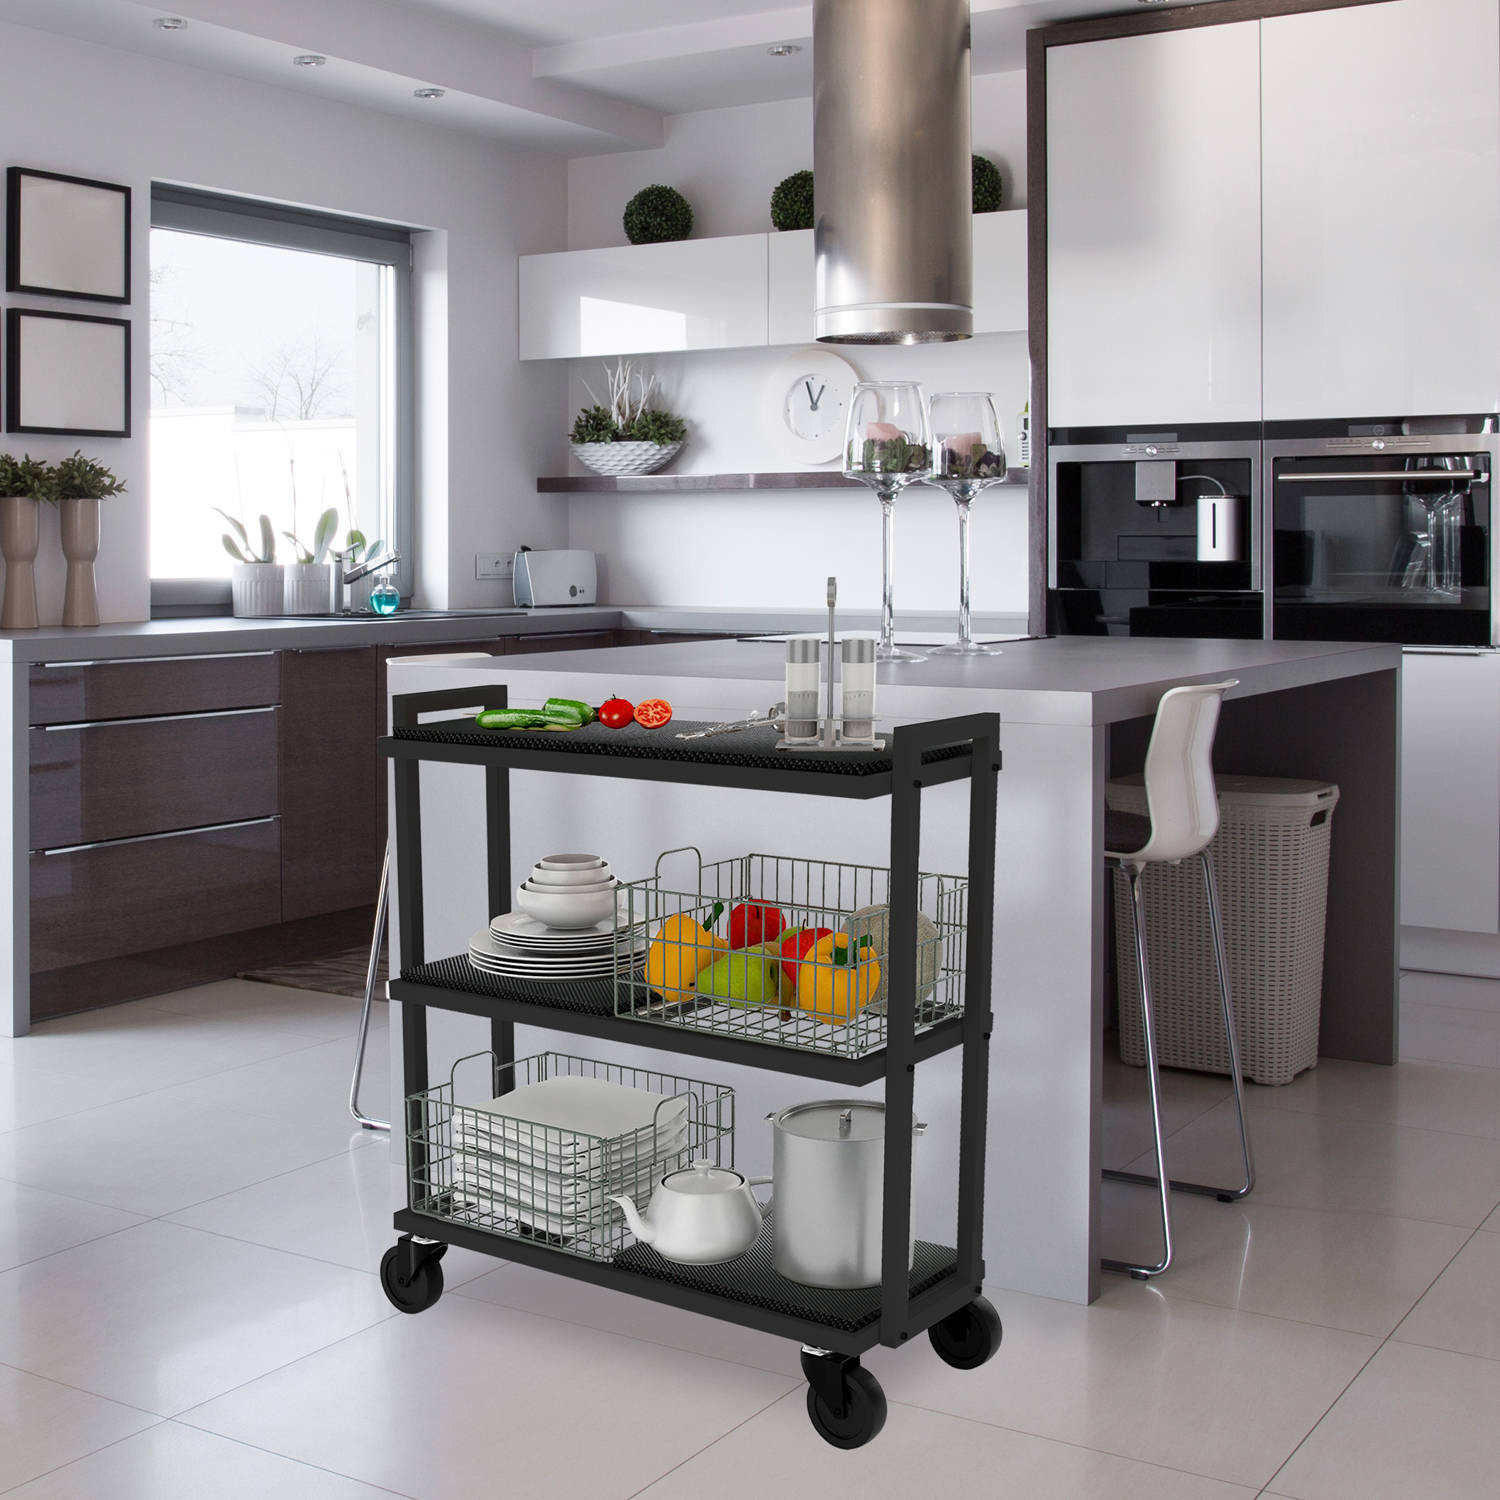 Walmart Kitchen Organizers
 Mainstays Configurable 3 Tier Rolling Kitchen Storage Cart